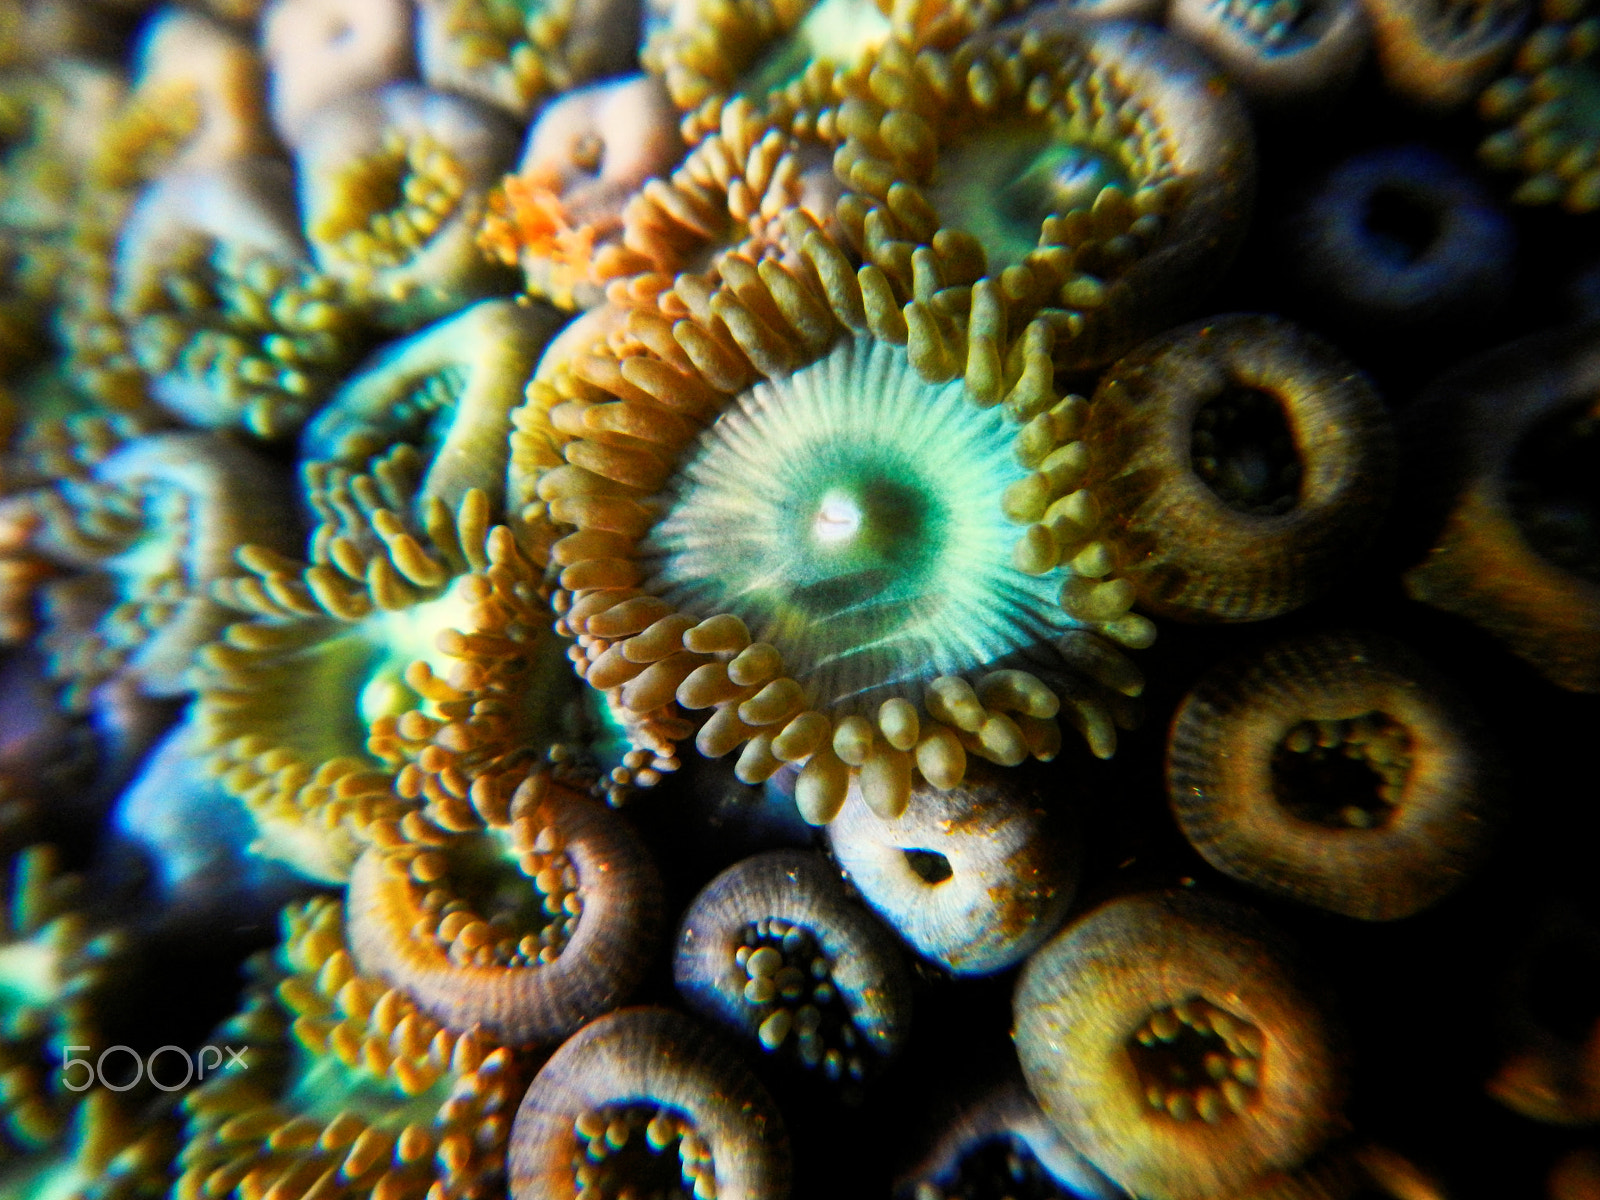 Nikon Coolpix AW100 sample photo. Coral green polyps photography